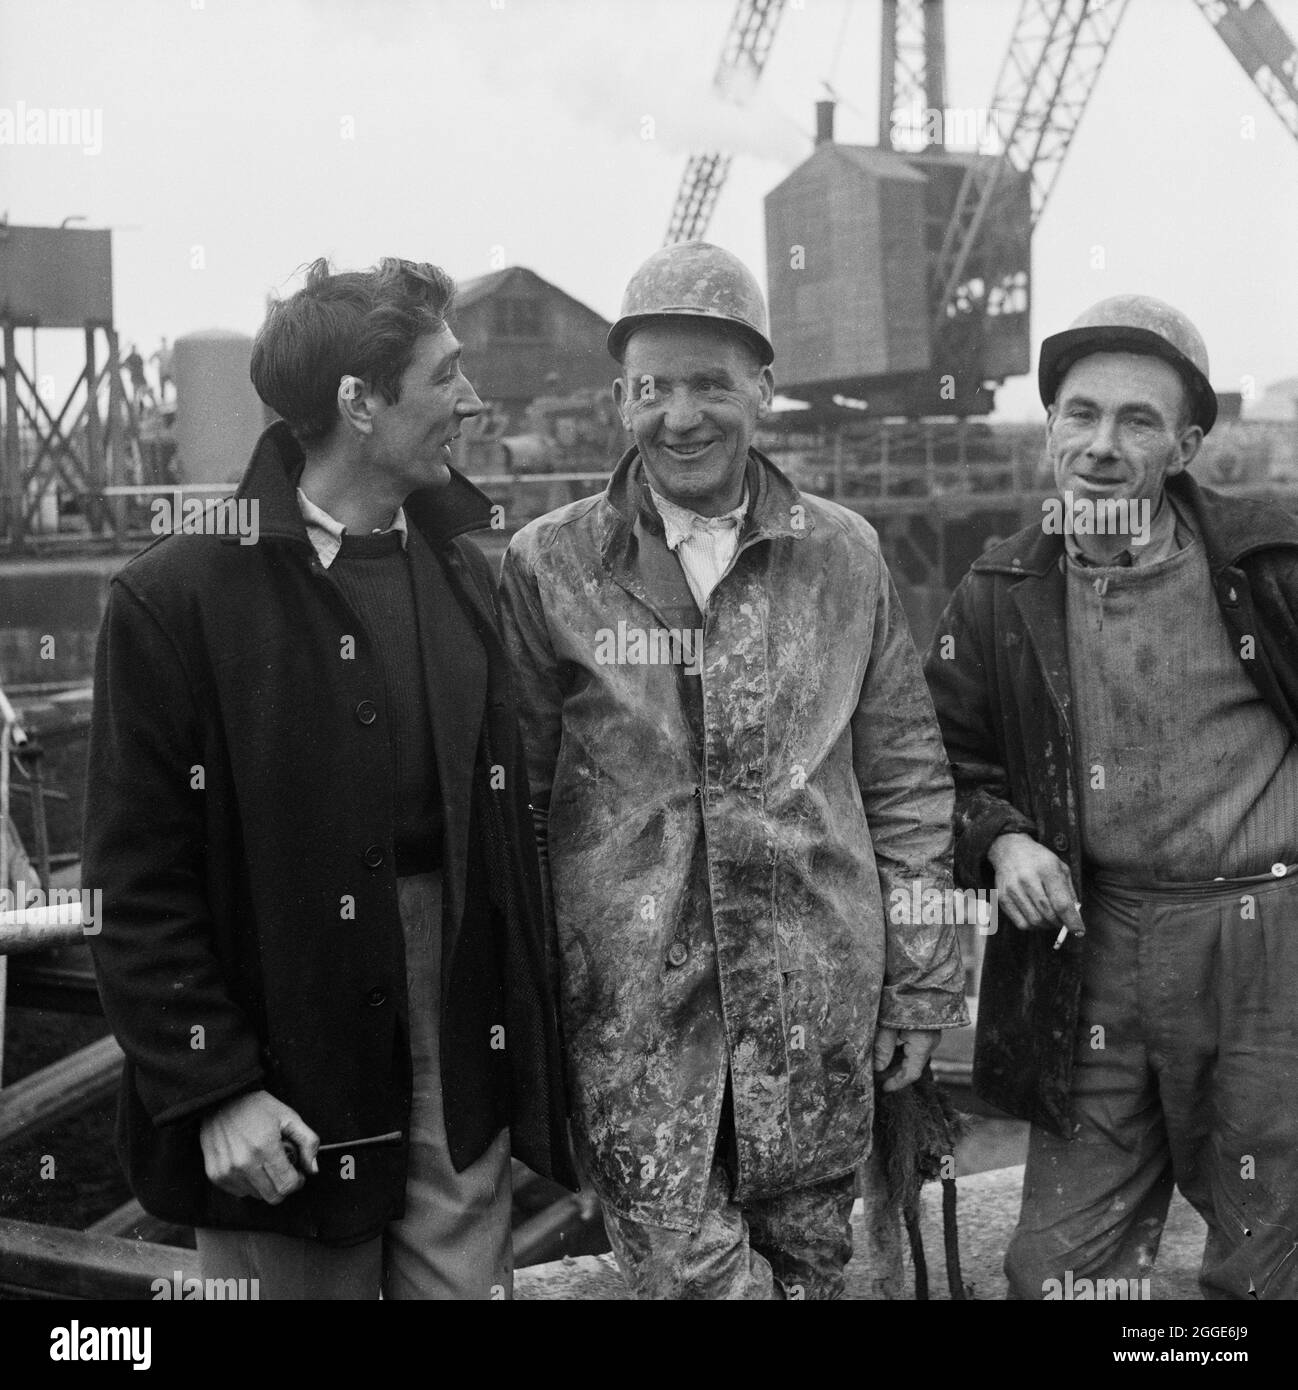 Un portrait de groupe de trois gangers, S. Jones, T. Cummersky et M. Ryan, employés dans le cadre du projet Portishead Dock. Une version rognée de cette image a été publiée dans la section 'Peoples' de l'édition de mai 1959 du bulletin mensuel de Laing, Team Spirit. En 1958, des travaux de réparation ont commencé à l'entrée de l'écluse du quai de Portishead pour l'Administration portuaire de Bristol. L'entrée de l'écluse avait été endommagée par l'effarouillement et le mouvement des vagues et devait être enlevée et renouvelée, et les murs existants étayé. En même temps, des travaux étaient en cours sur le dernier tiers de la centrale électrique de Portishead 'B'. Banque D'Images